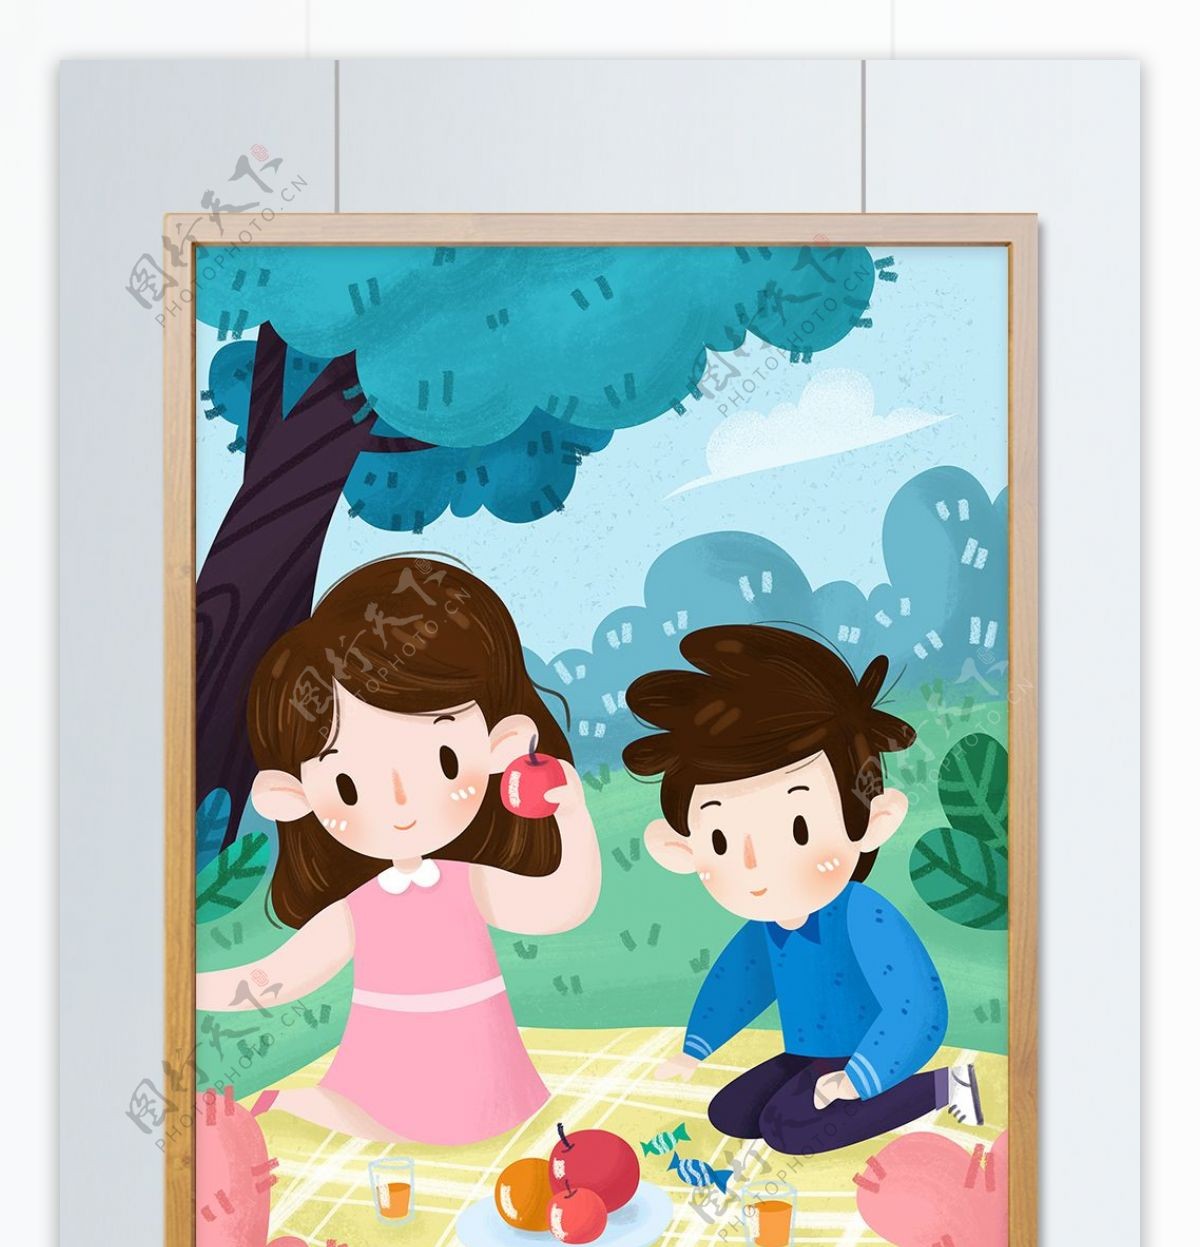 儿童节快乐儿童野餐男孩女孩水果植物插画